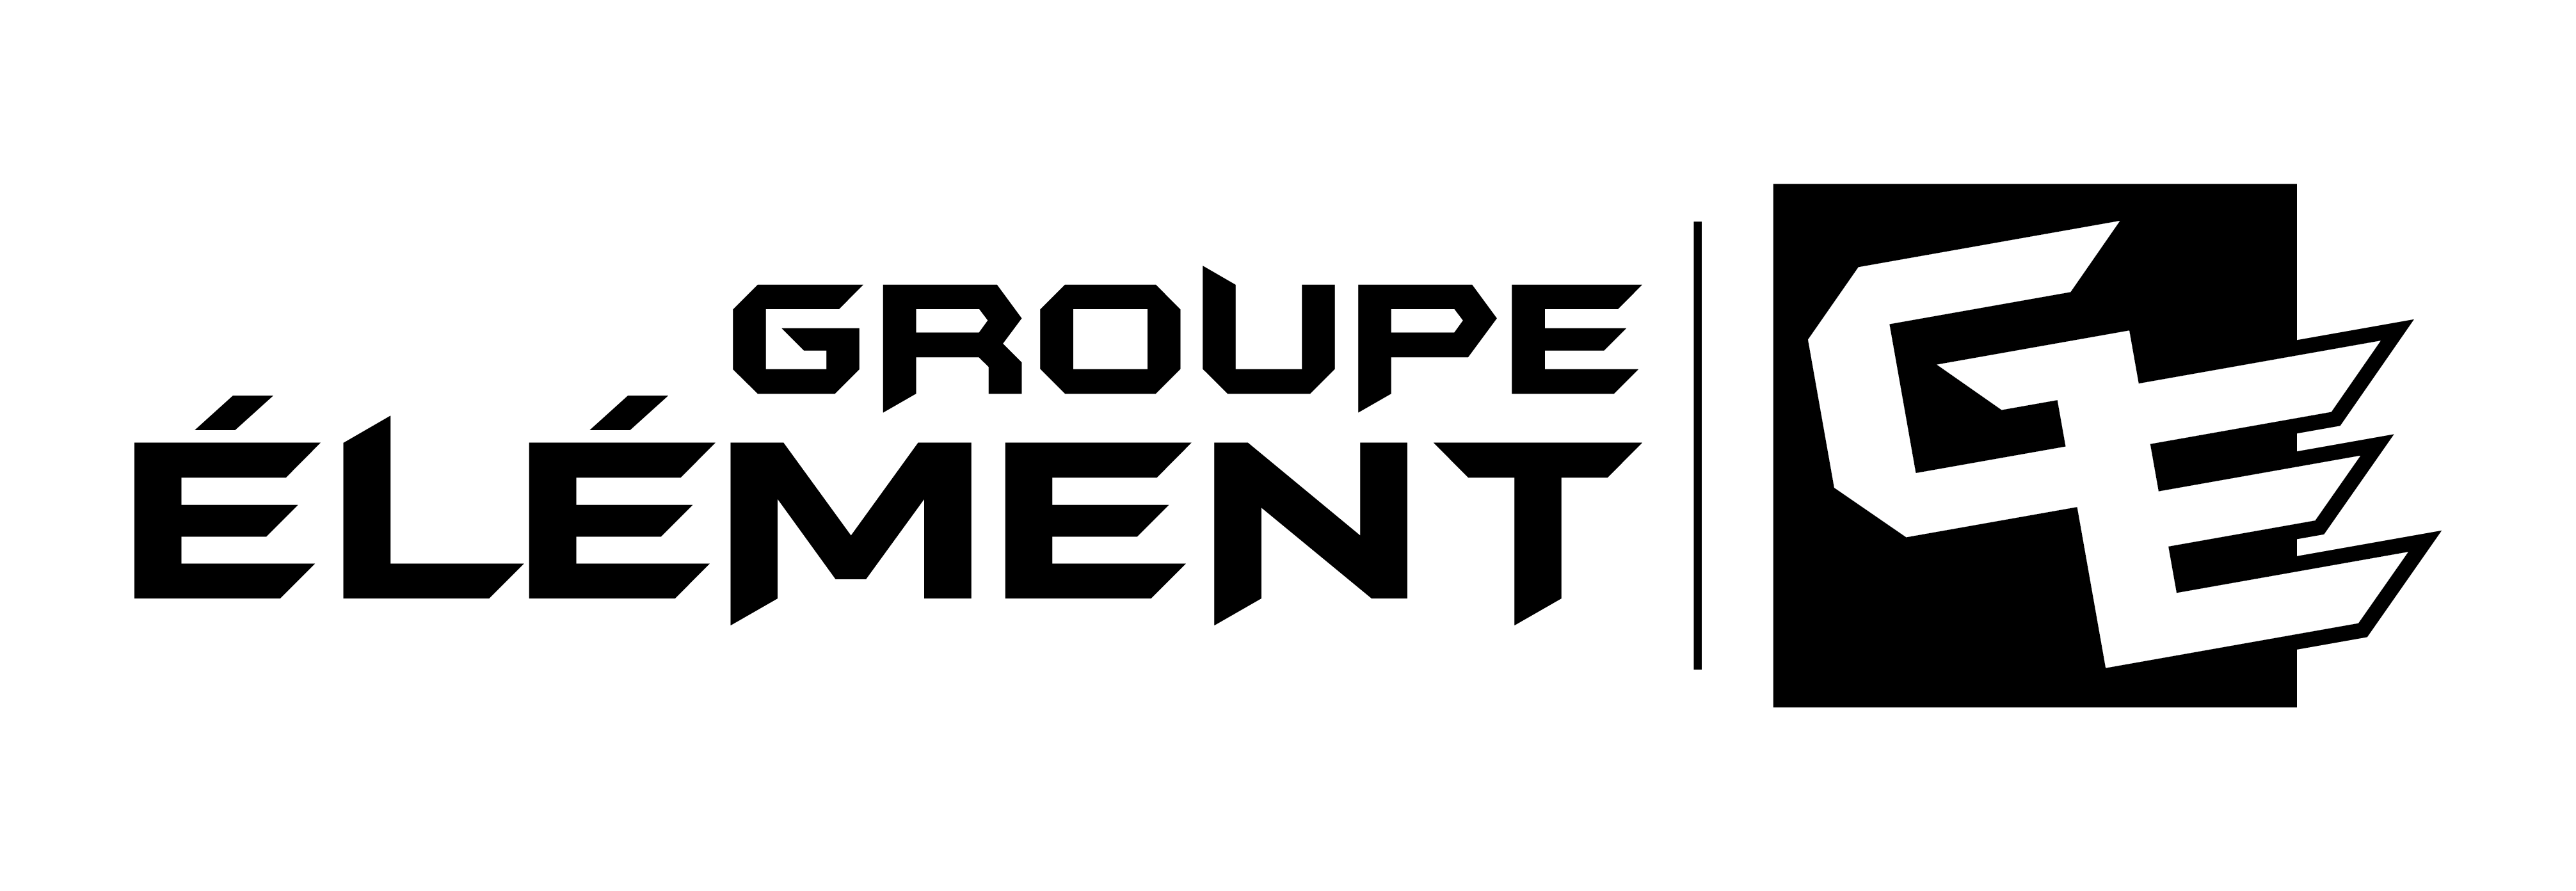 GROUPE ELEMENT logo